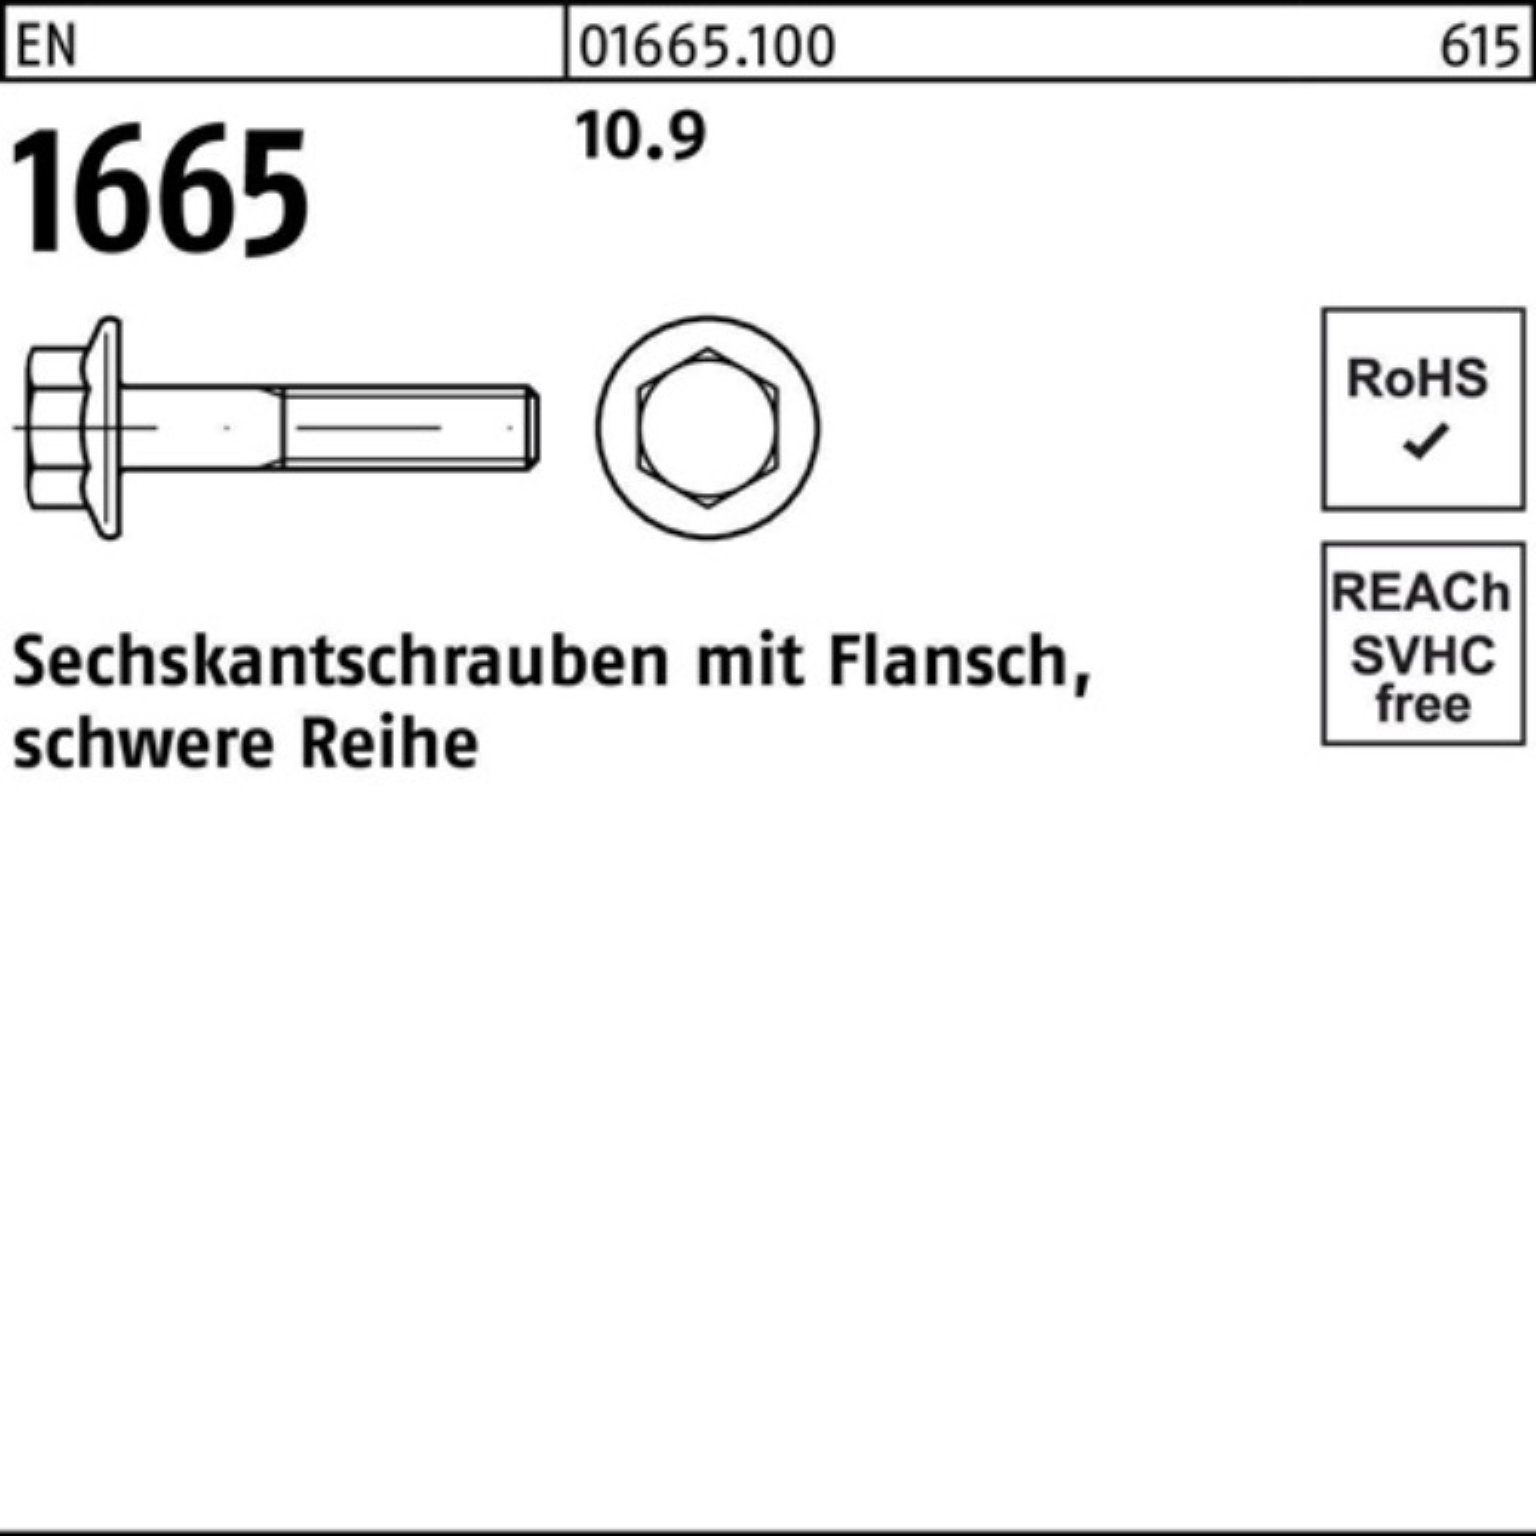 200 Sechskantschraube Sechskantschraube 10.9 200er Stück 20 M8x Reyher Pack EN Flansch EN 1665